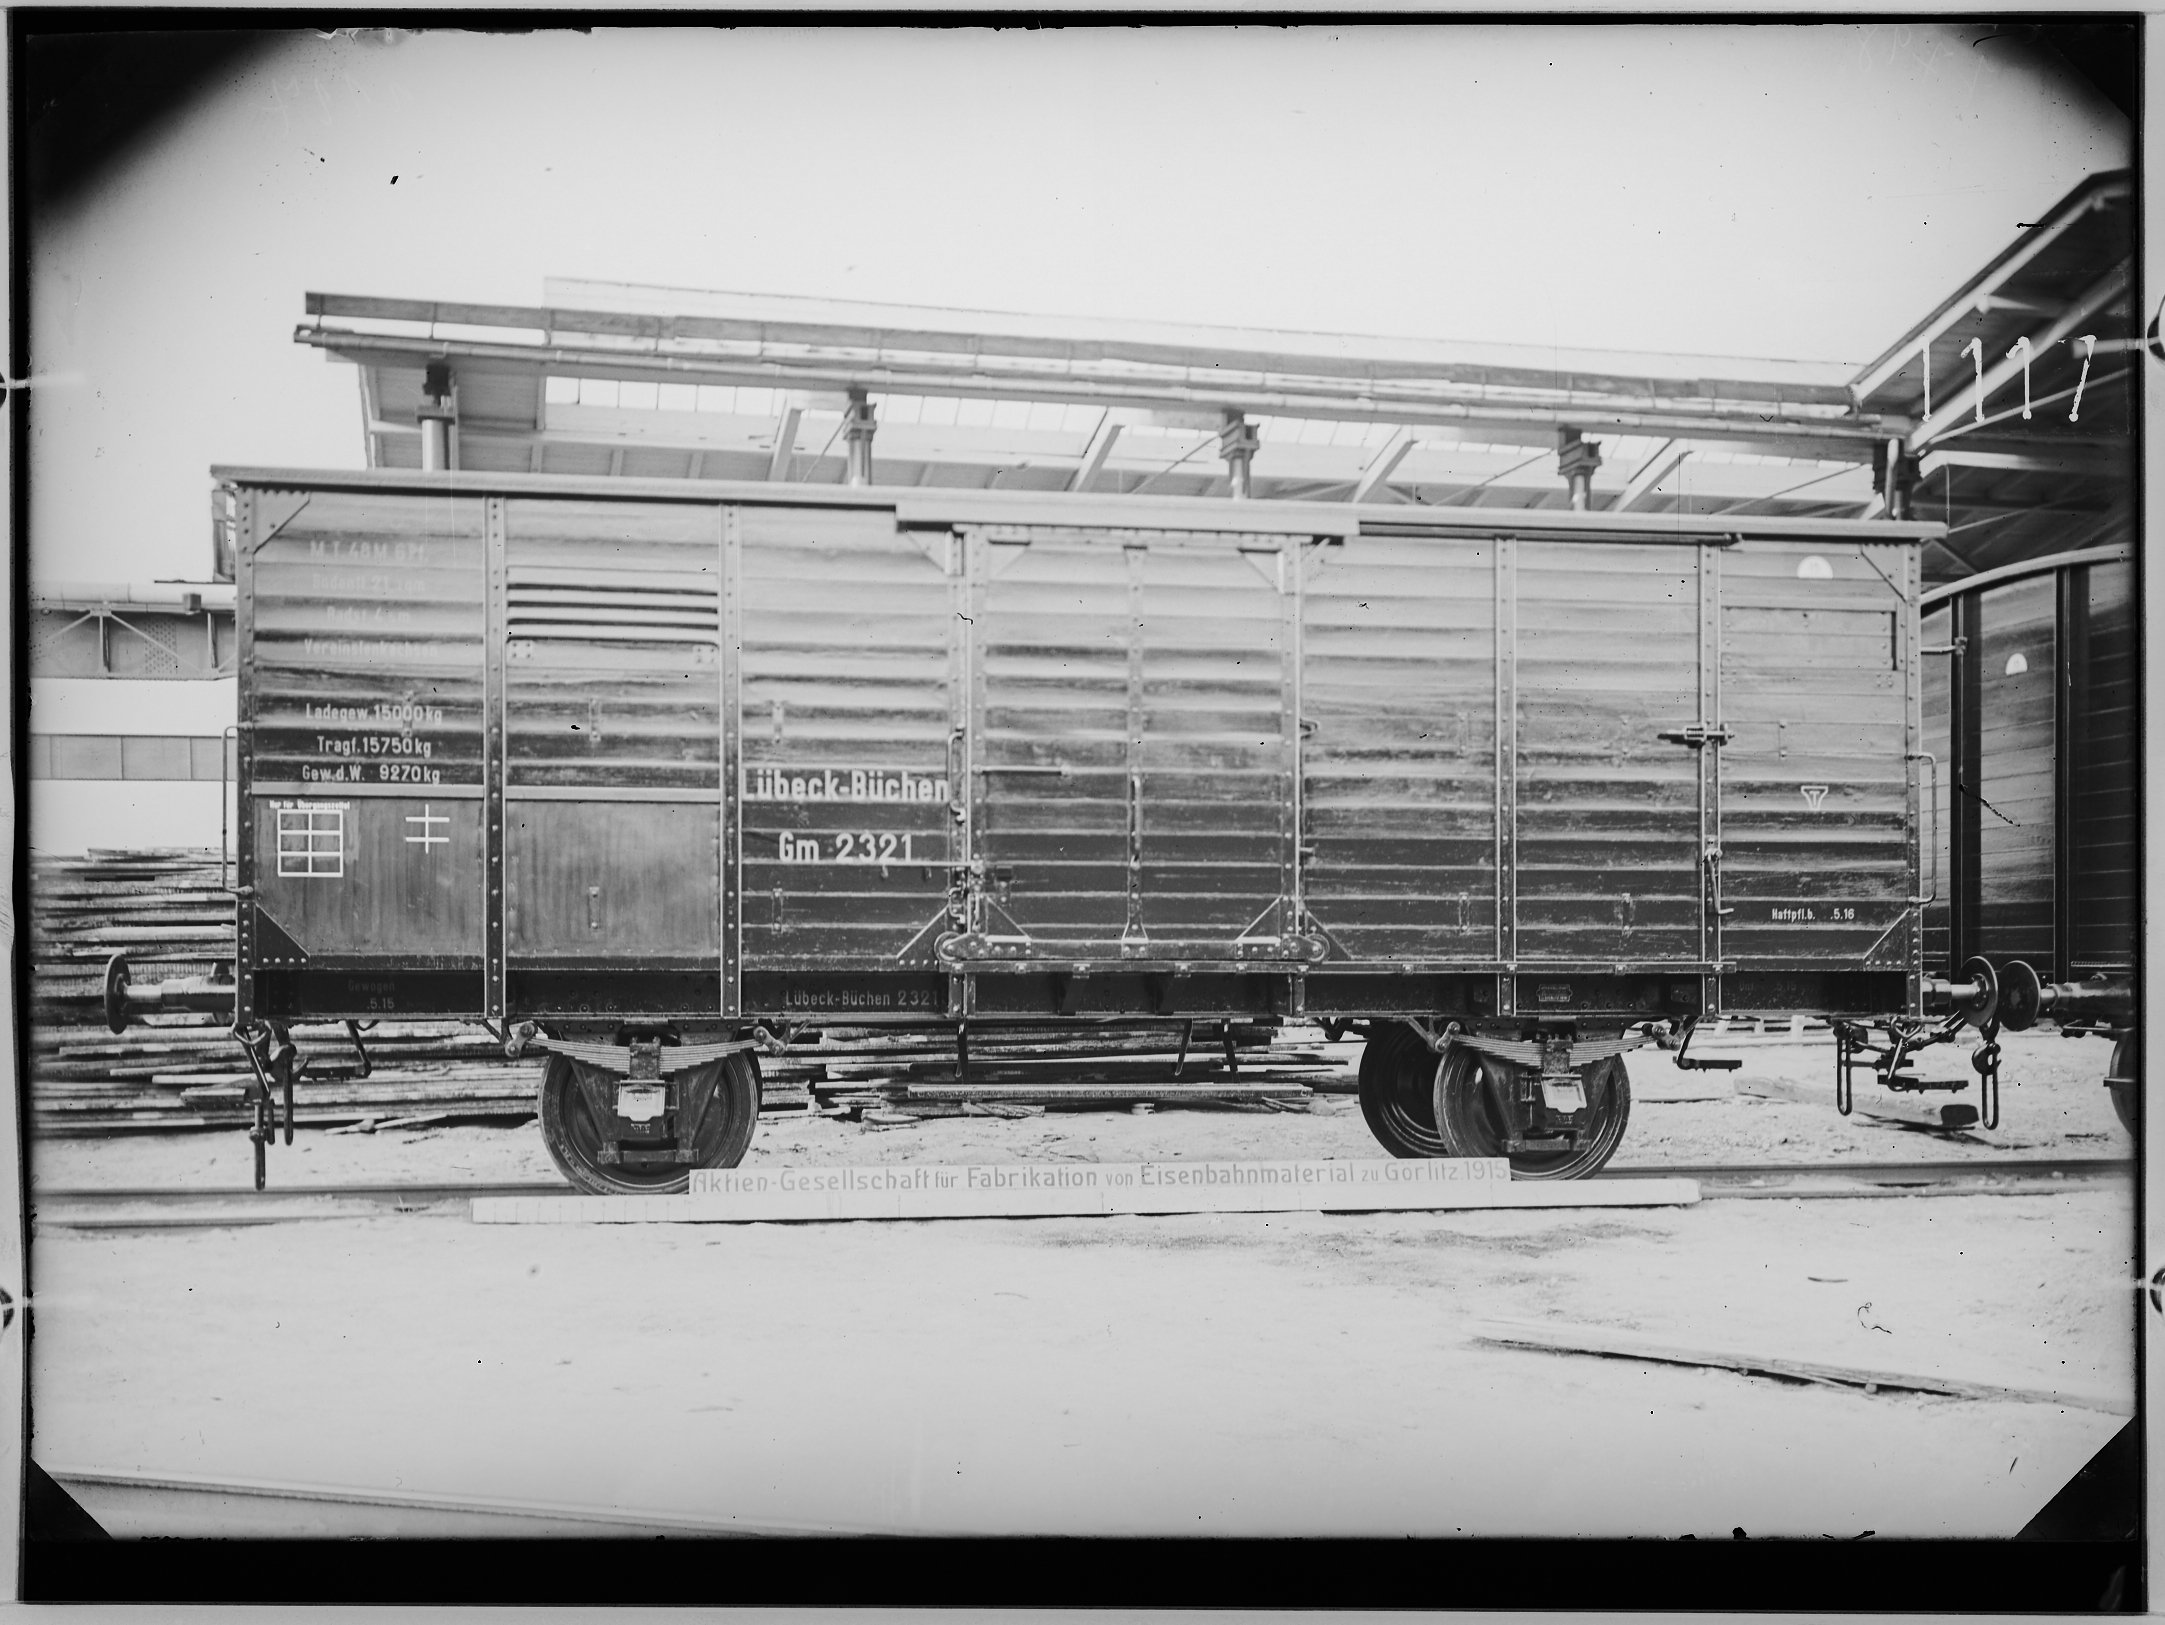 Fotografie: zweiachsiger gedeckter Güterwagen ohne Bremse, Gattung Gm (Längsansicht, Spurweite: 1435 mm), 1915. Direktion der Lübeck-Büchener Eisenbah (Verkehrsmuseum Dresden CC BY-NC-SA)